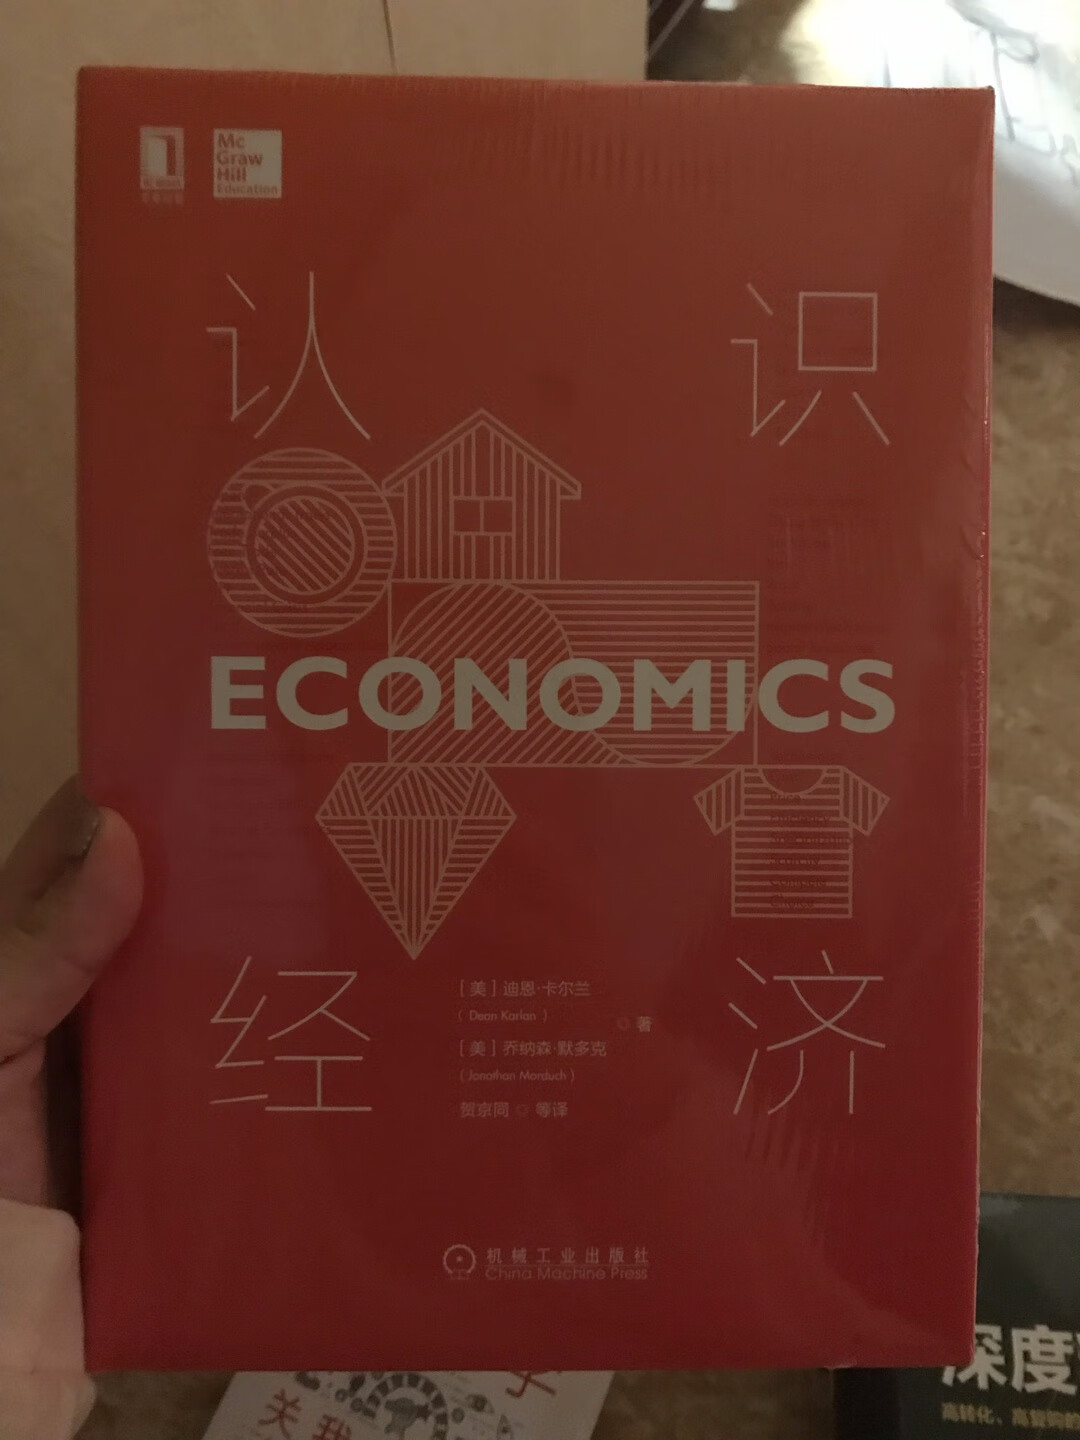 还没开始看 大概翻阅了一下 适合想要了解经济学的入门书目